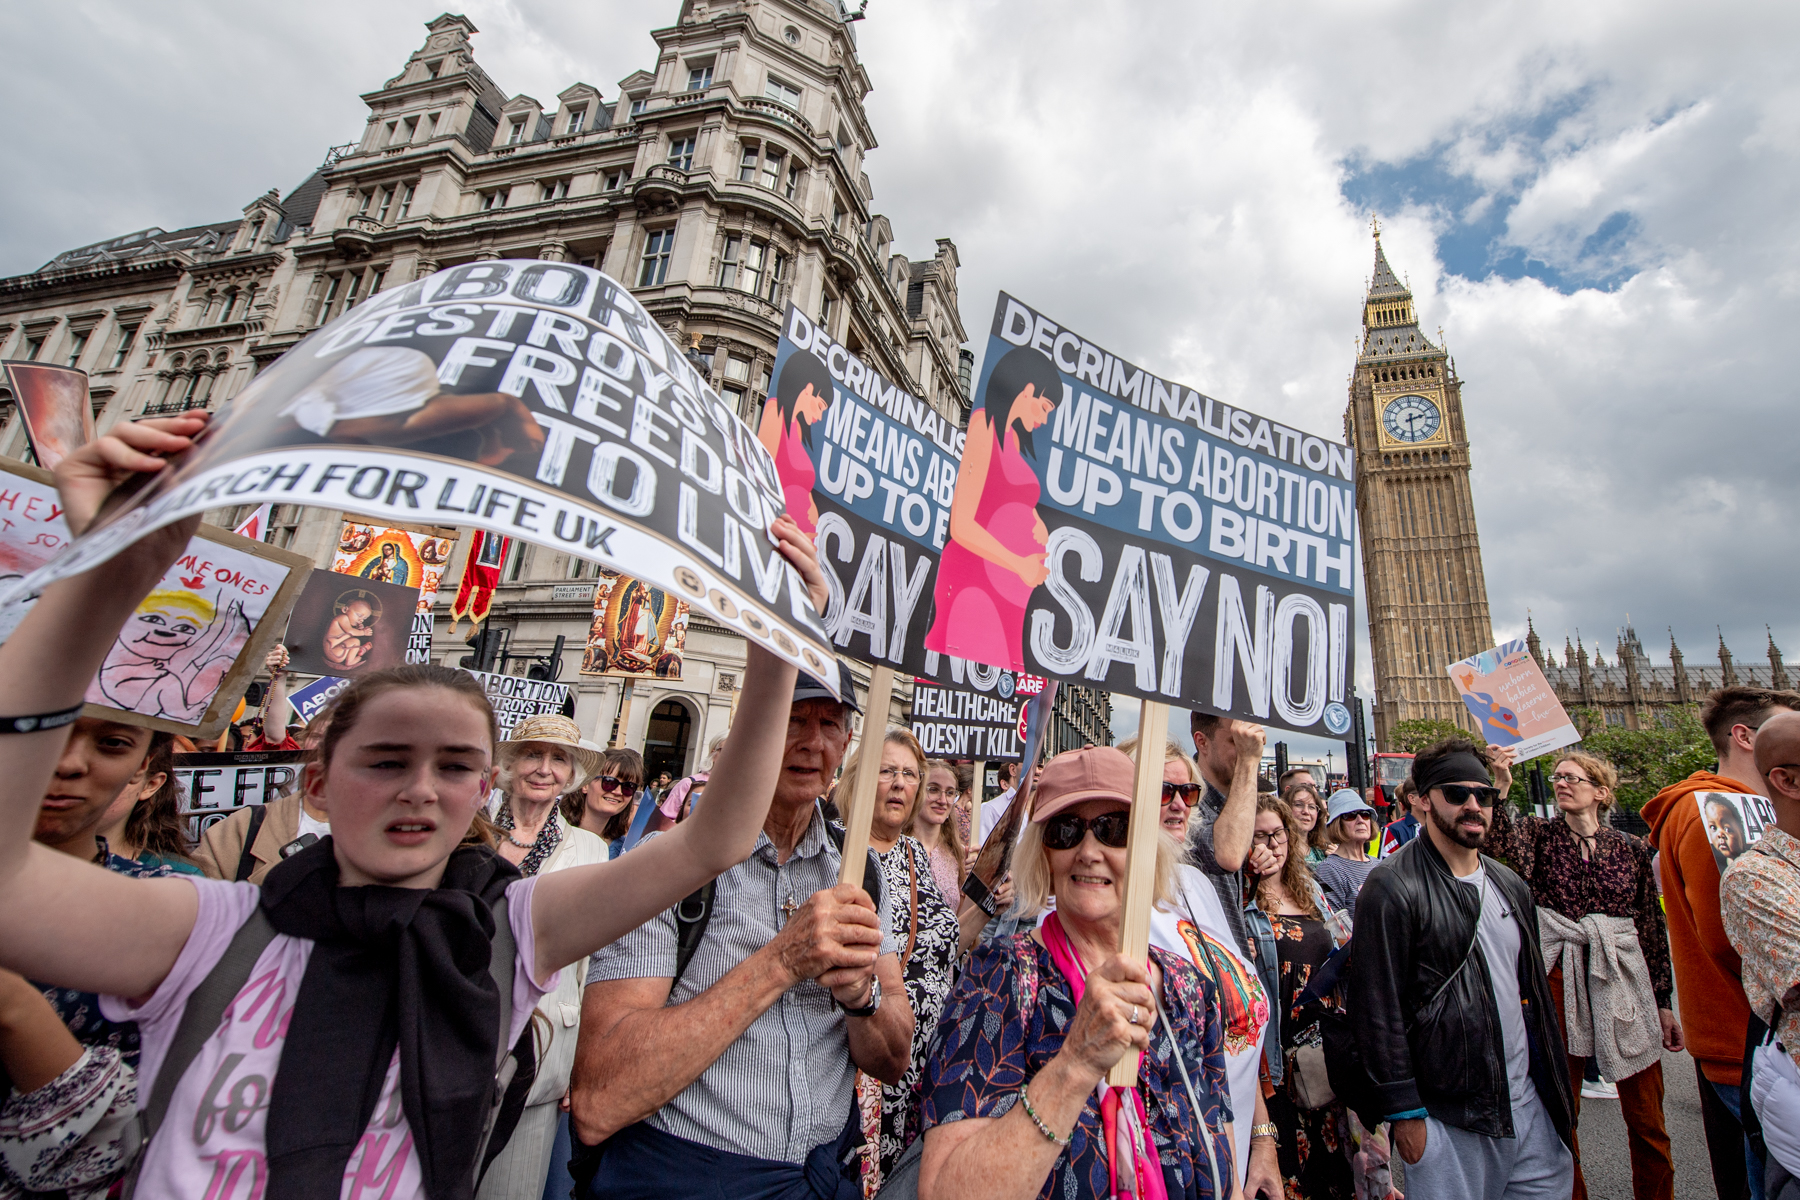 7 mil pessoas marcham contra o aborto em Londres: “Liberdade para viver”